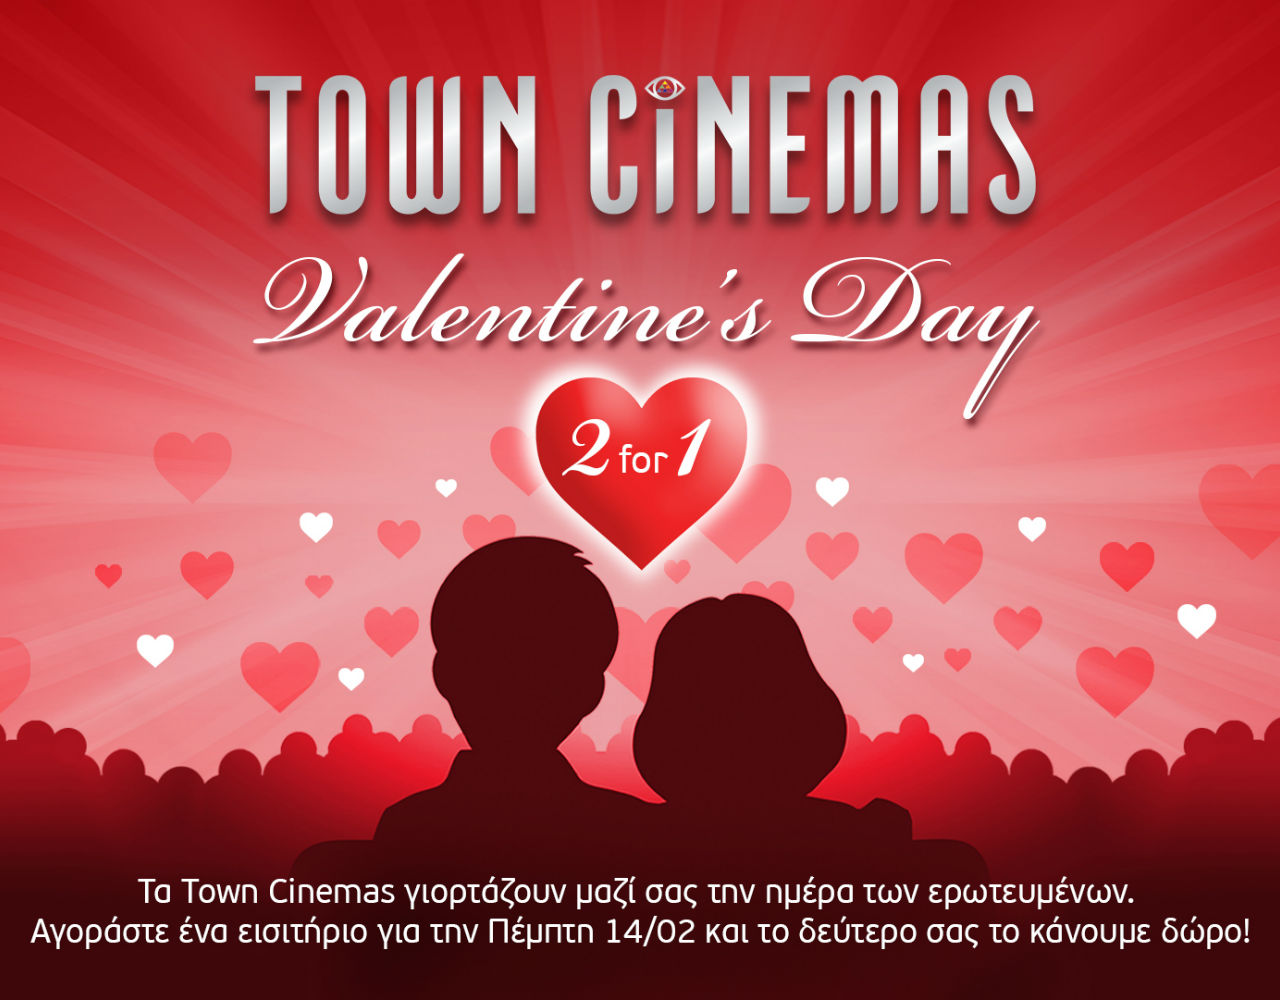 Γιορτάστε την Ημέρα των Ερωτευμένων στα Town Cinemas